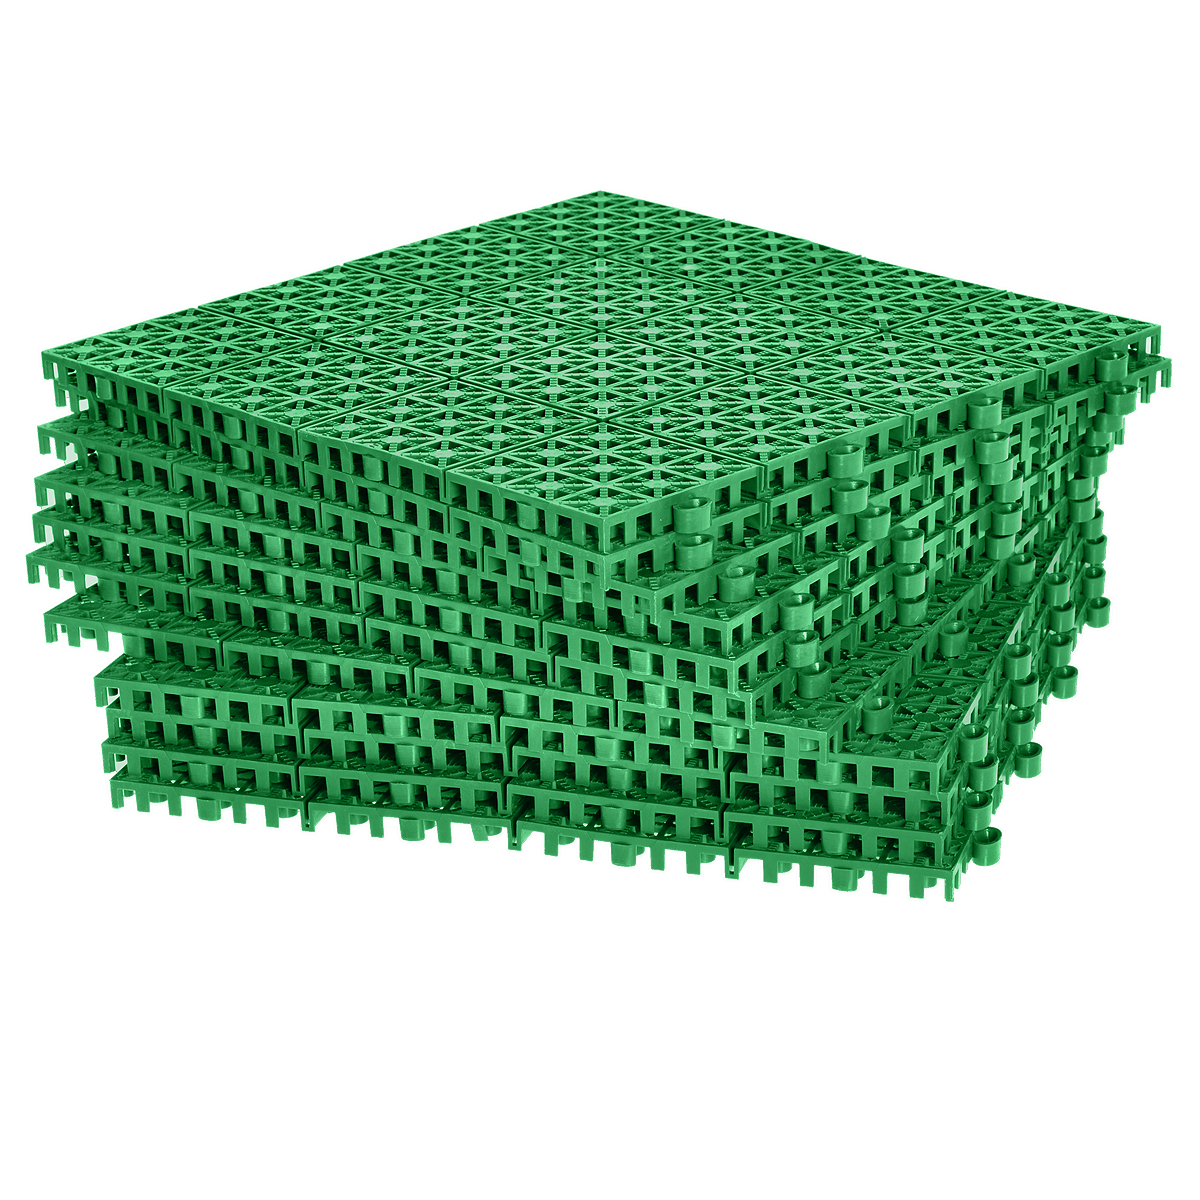 Купить пластиковое покрытие. Модульное покрытие для дорожек (30*30см, 9 шт) зеленое, 77001, Pol-Plast. Покрытие модульное 330х330 (9шт) зеленый Vortex. Покрытие модульное Pol-Plast 30х30 см, зеленый. Покрытие пластиковое, универс. 1м.кв. (9 плиток) цвет зеленый Vortex, 5365.